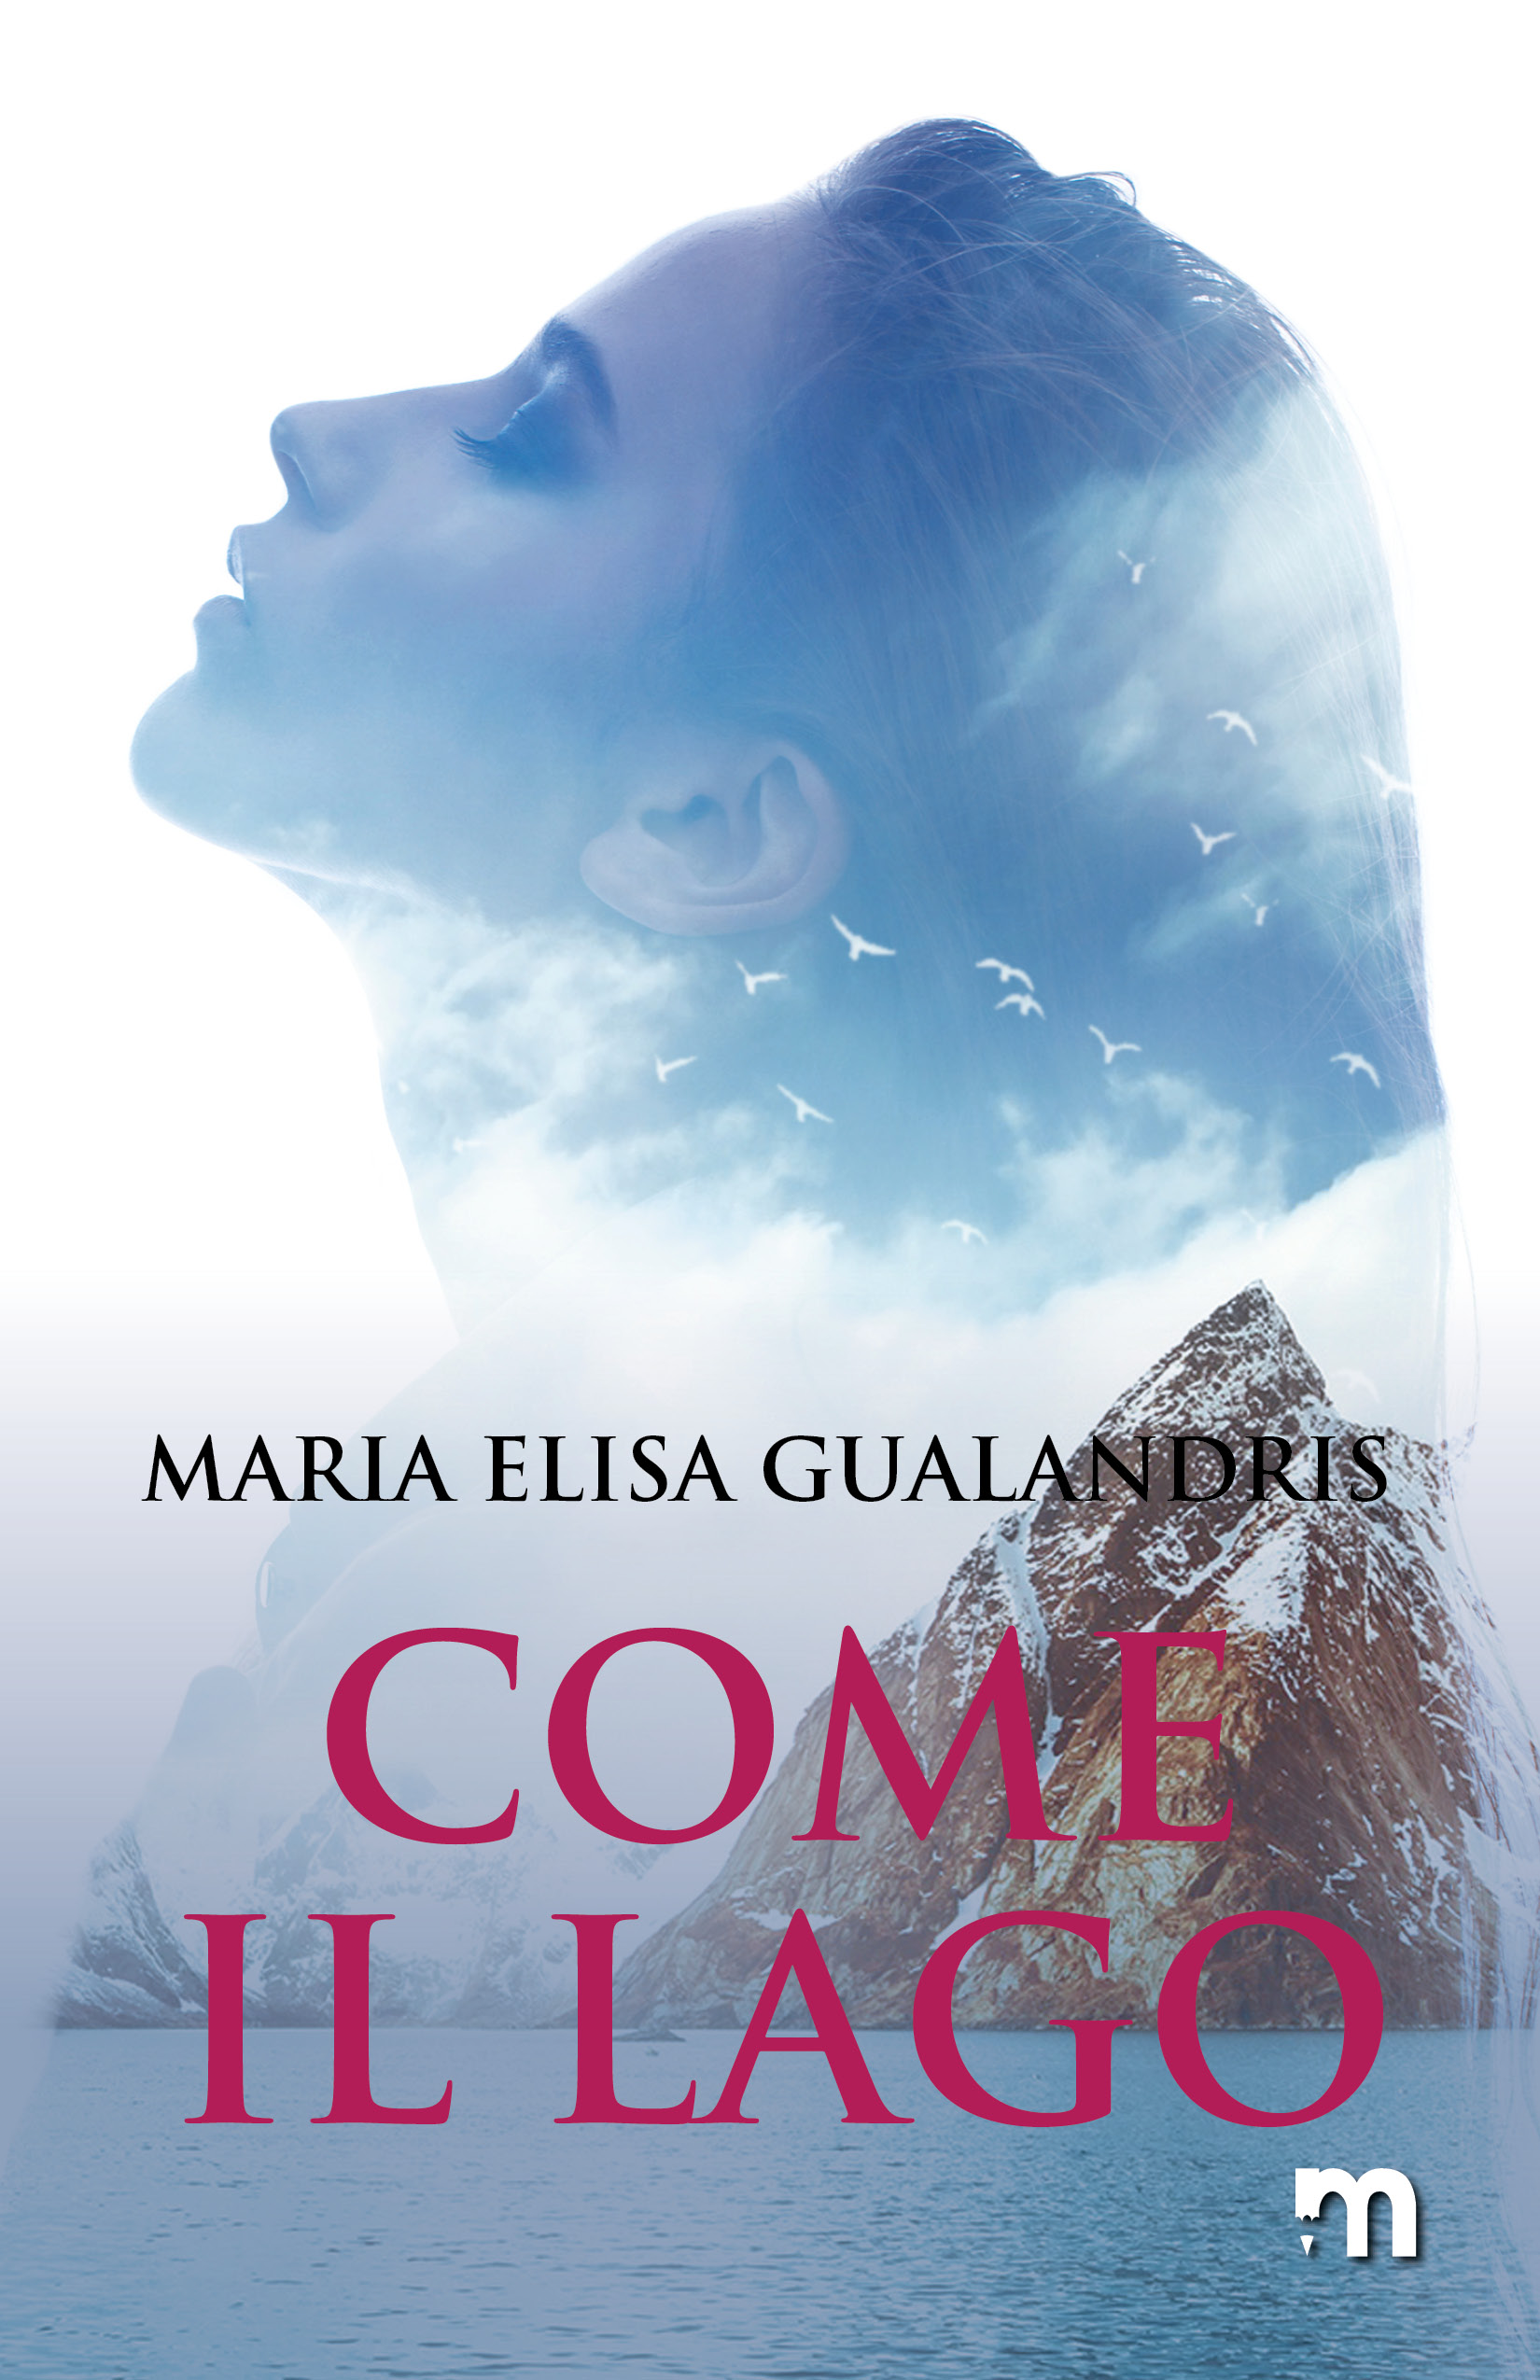 MS Gualandris ComeIlLago COVER 300